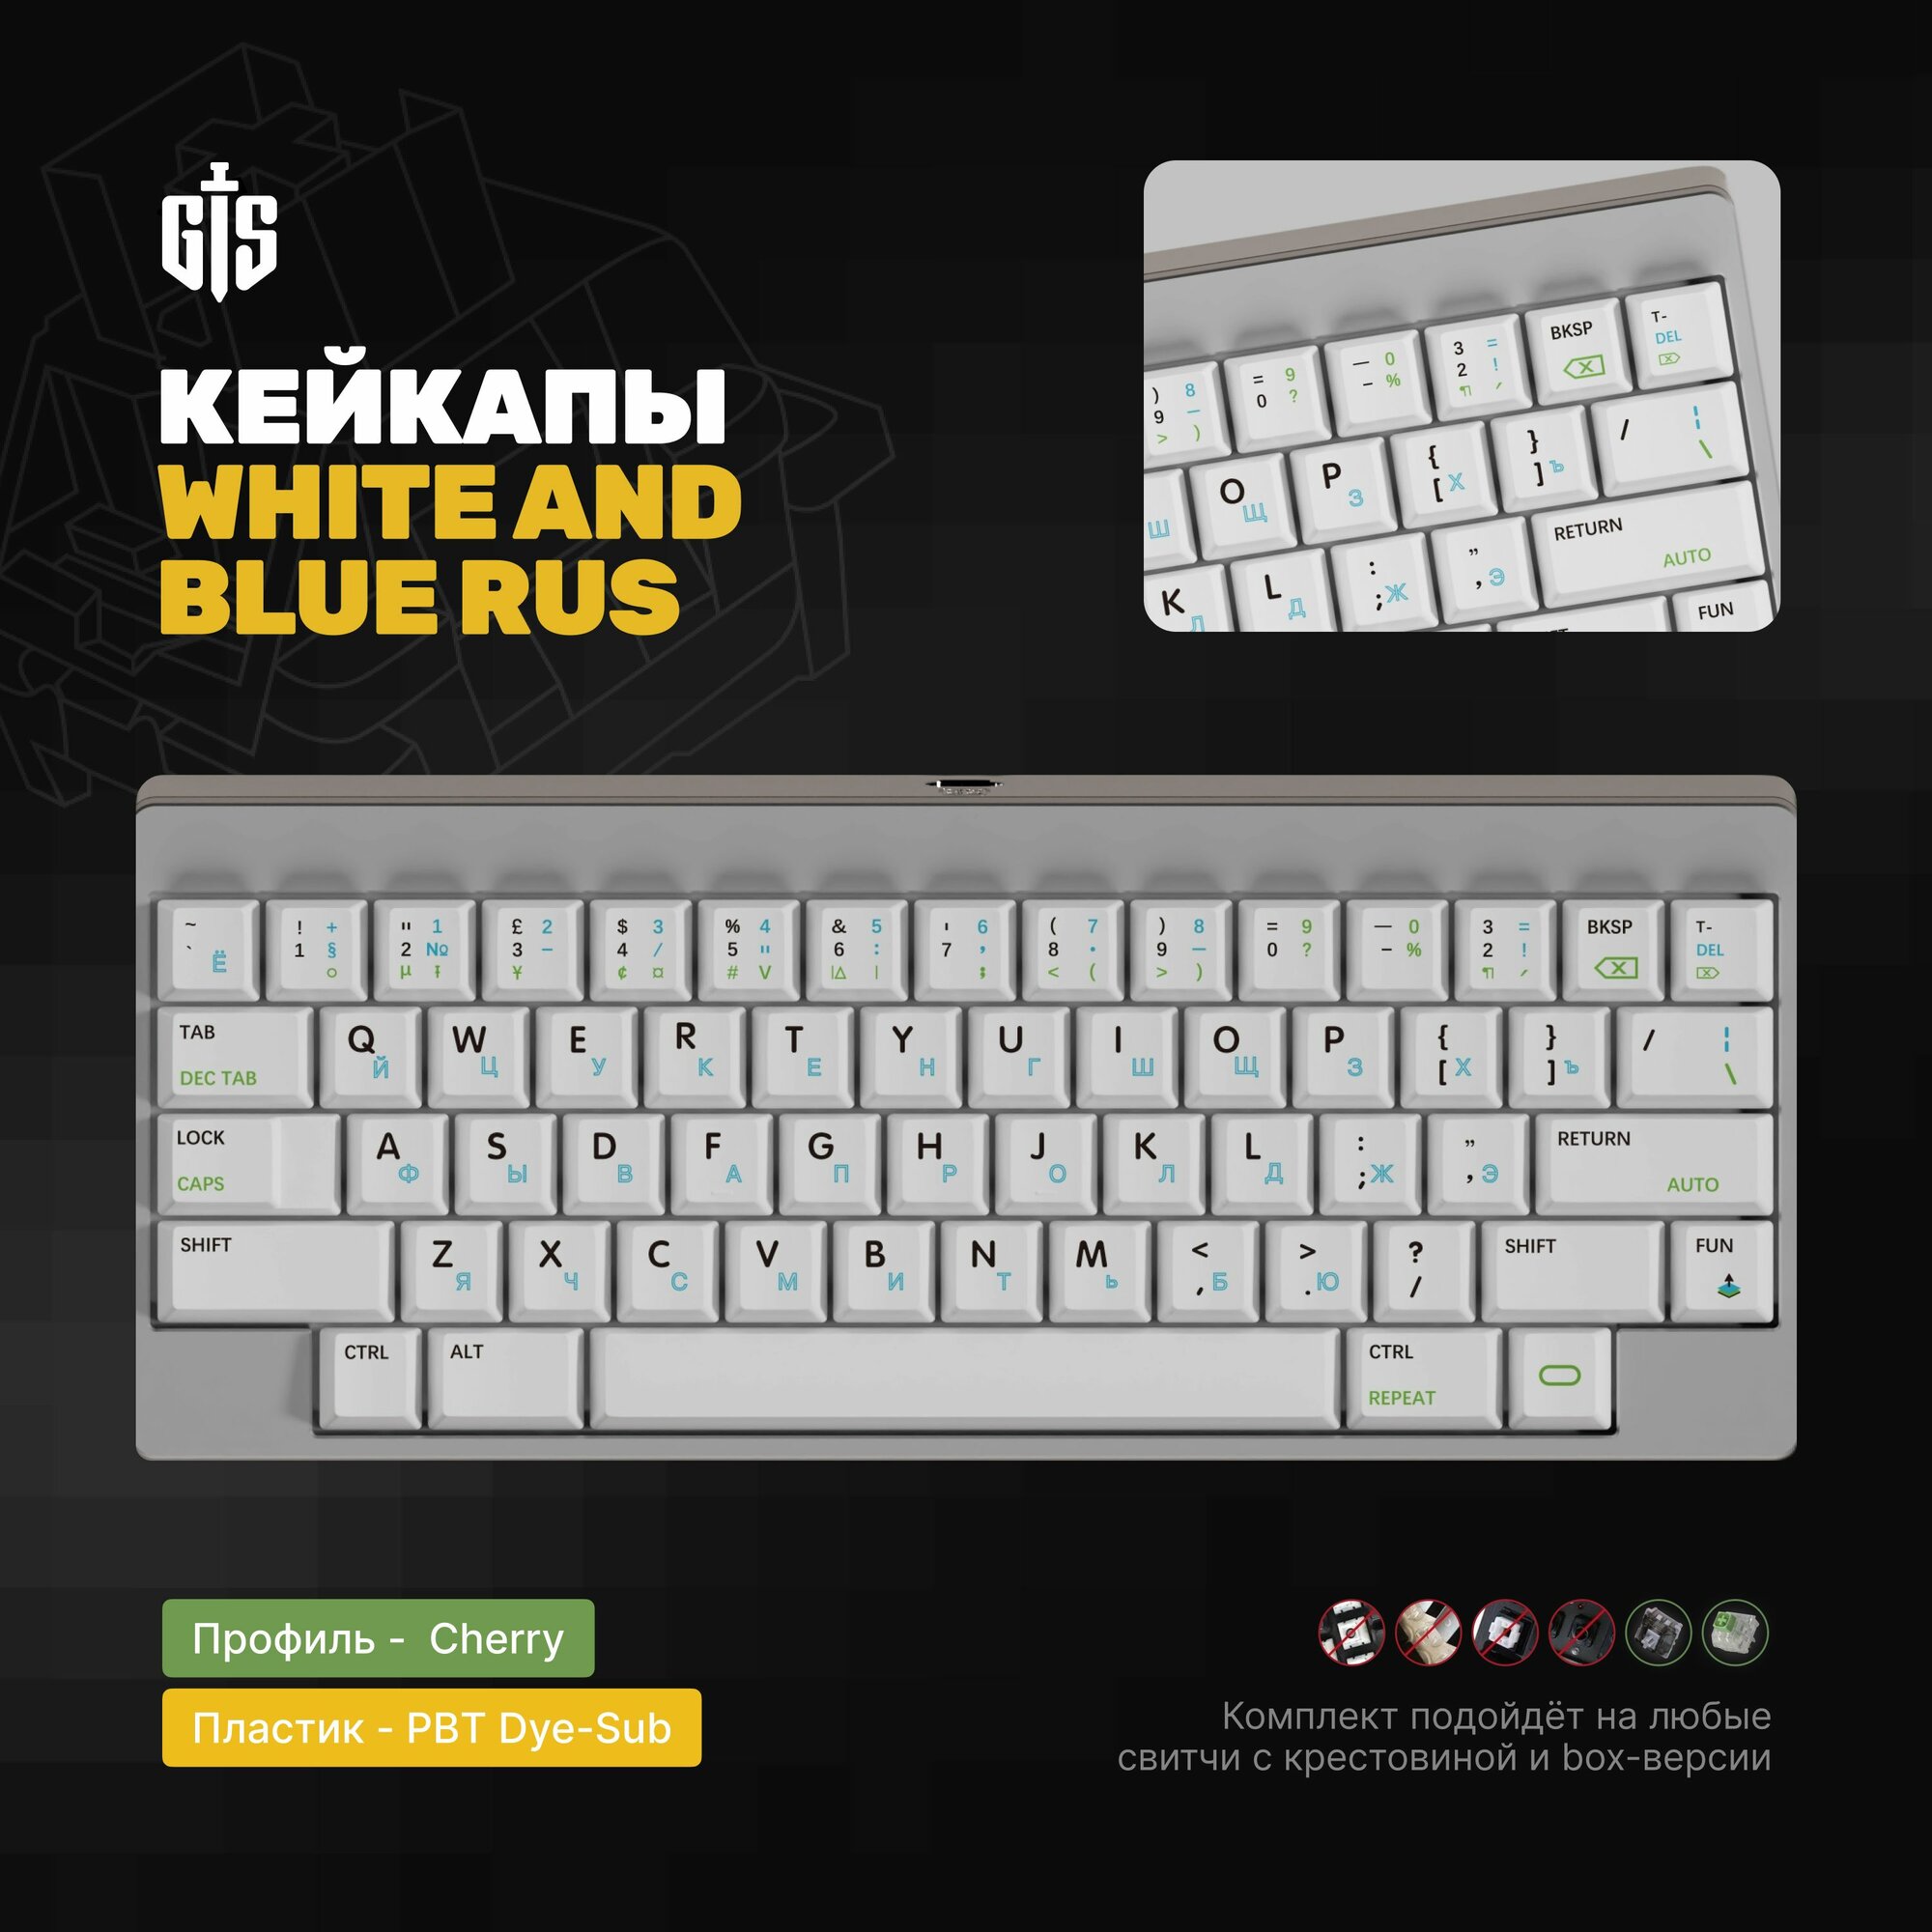 Кастомные кейкапы с русскими символами White and Blue RUS, профиль Cherry, PBT пластик